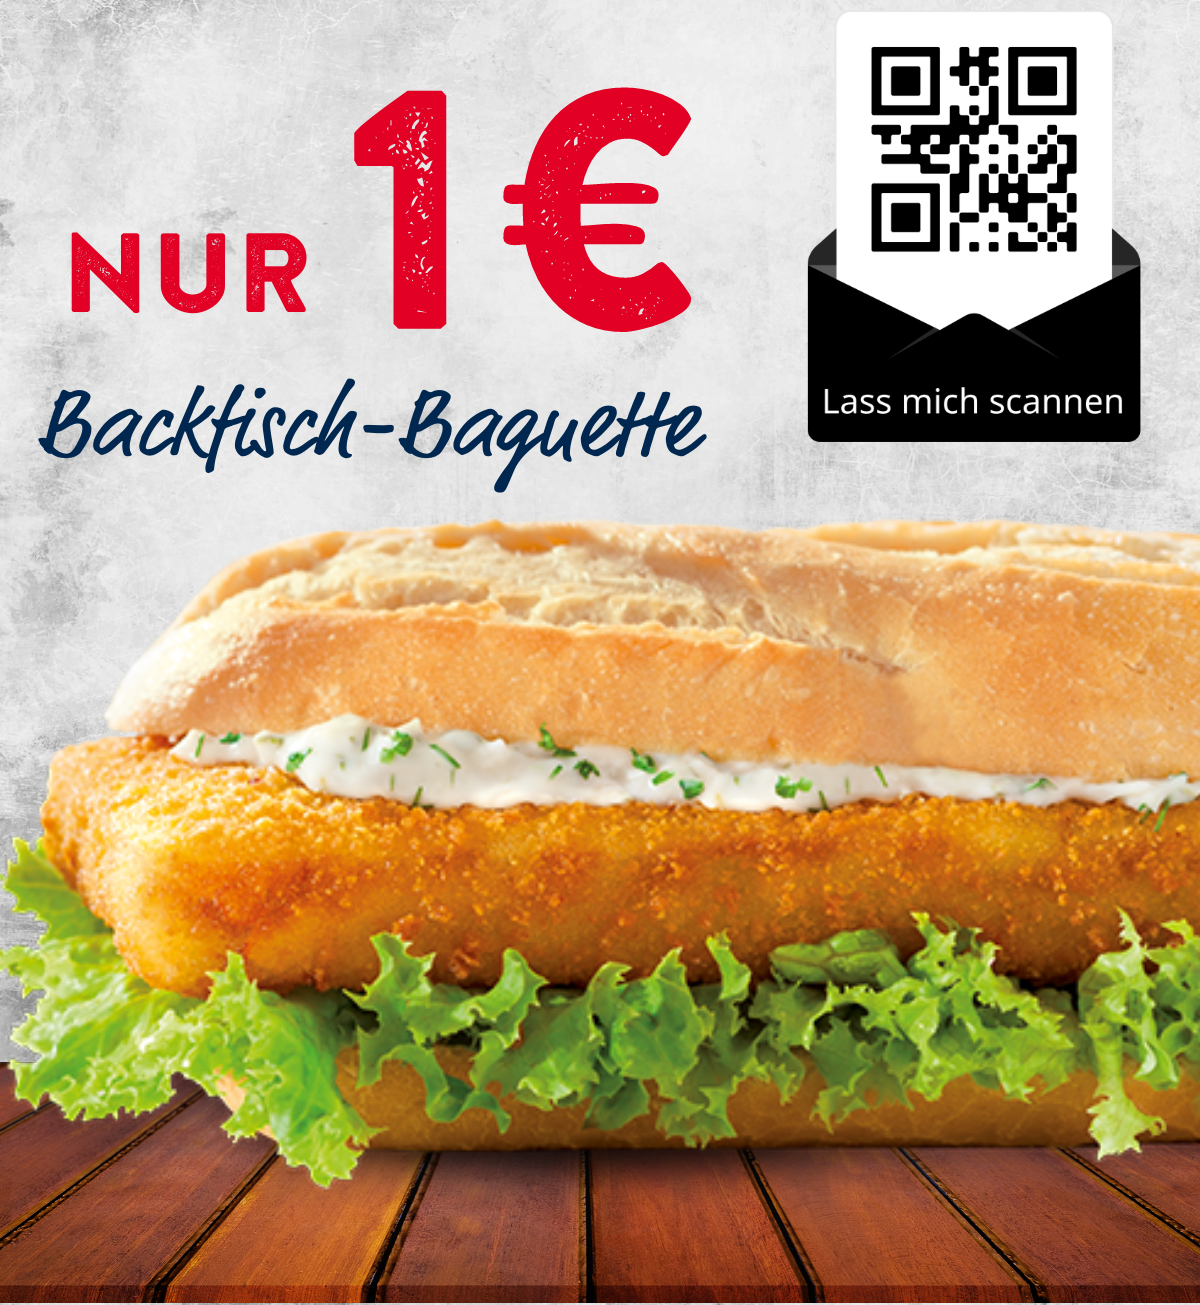 Nordsee: Backfisch Baguette und Big Bremer für je nur 1€